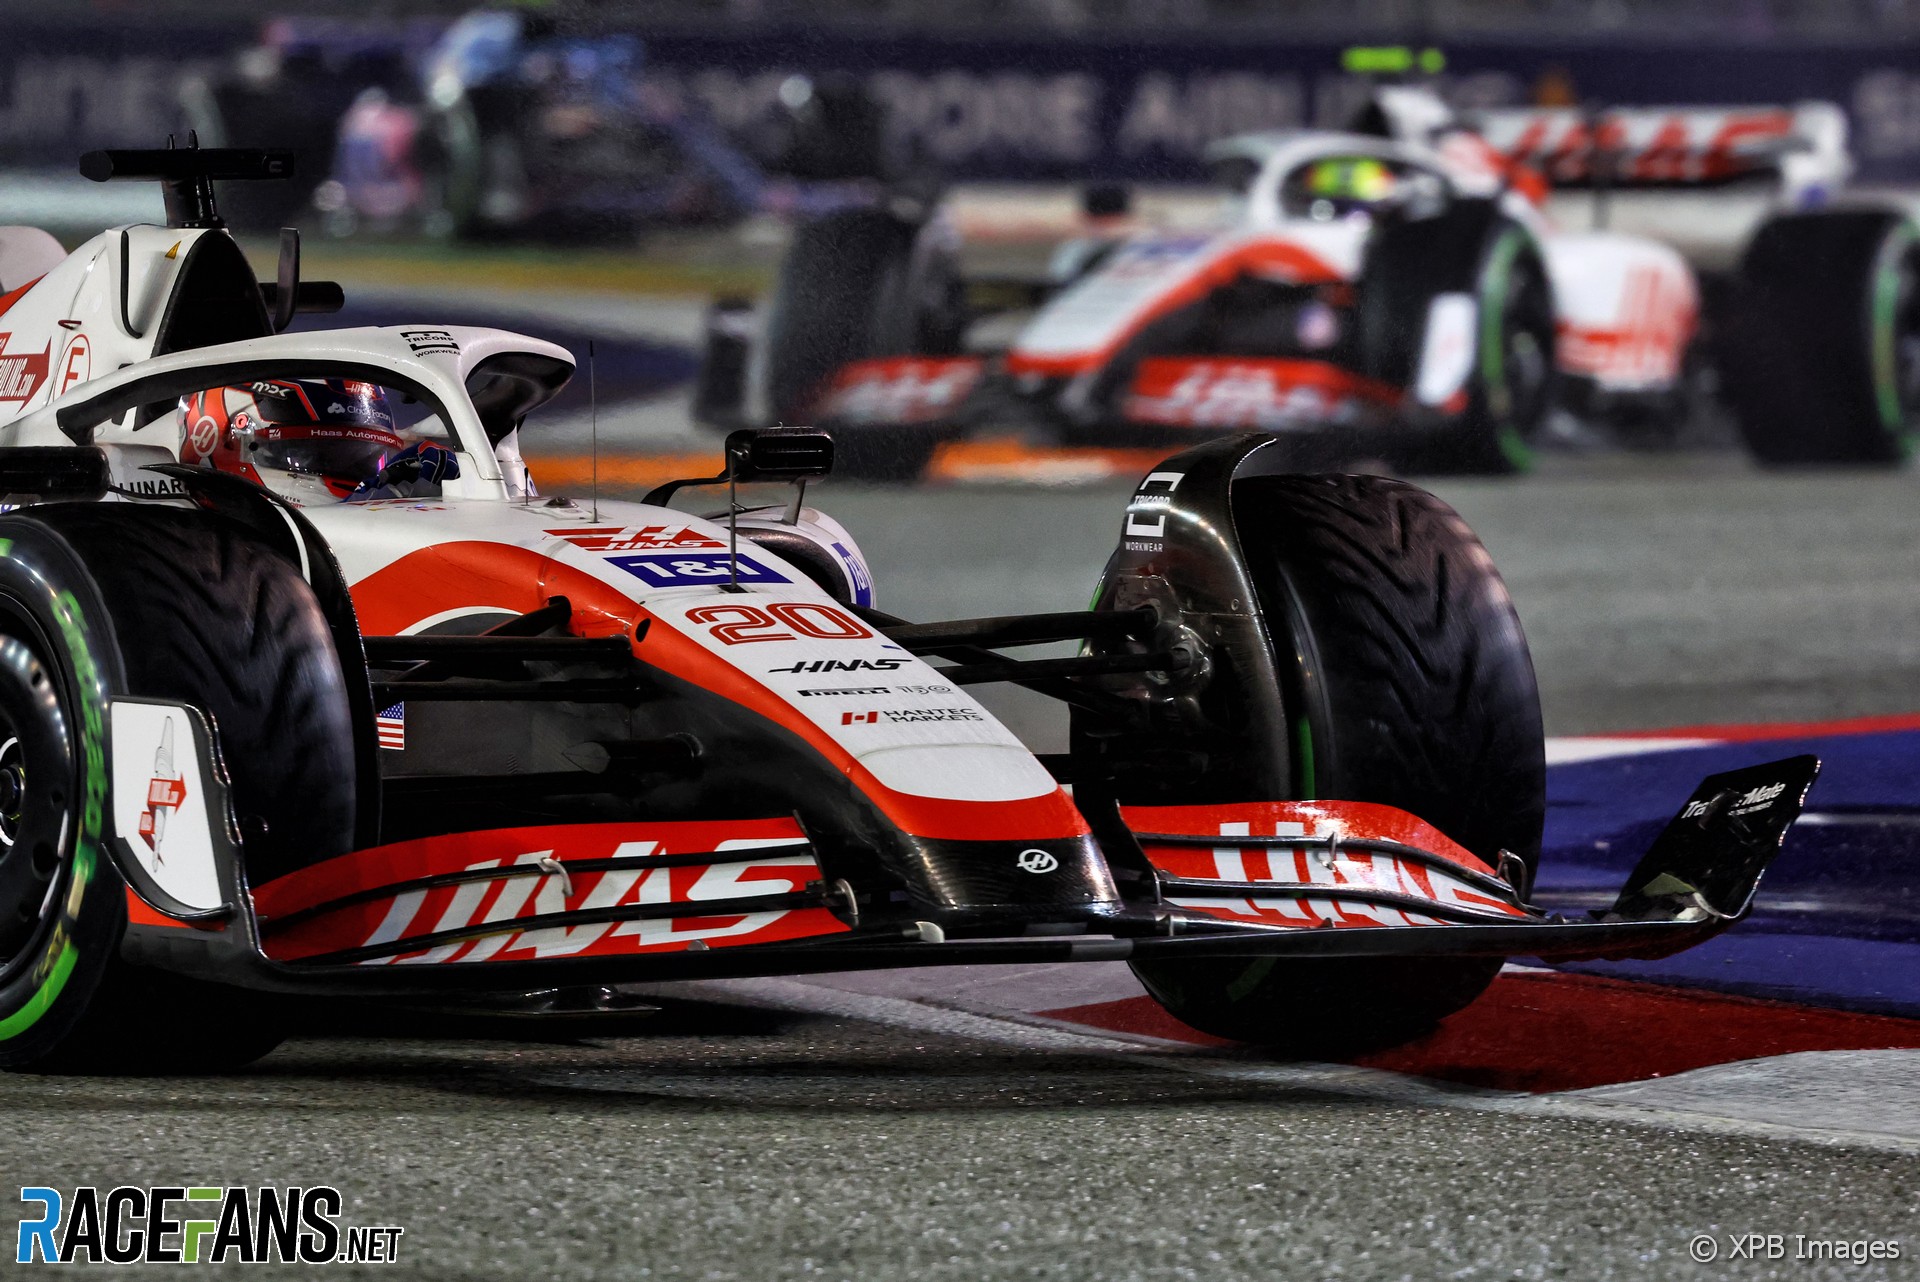 Haas enfurecido por la tercera bandera negra y naranja de Magnussen RaceFans